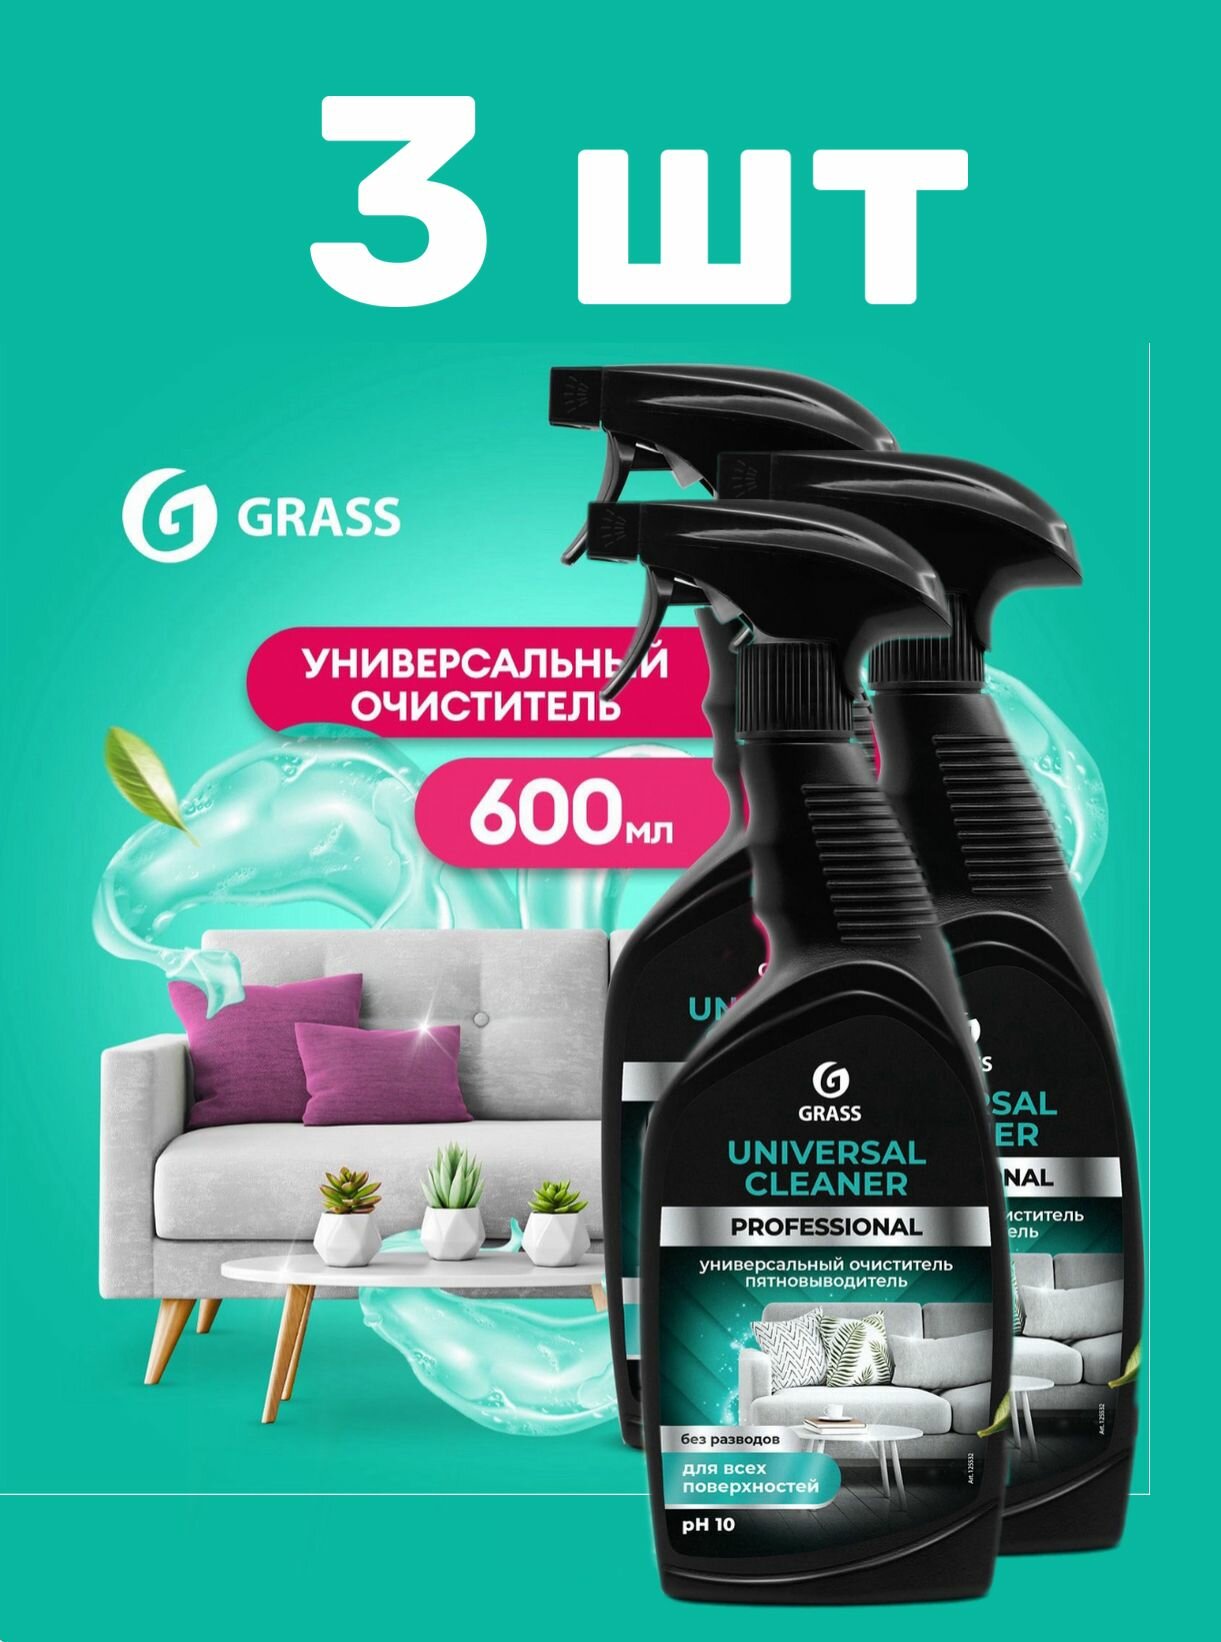 3 шт, Универсальное чистящее средство для уборки, чистки мягкой мебели, ковров, отбеливания обуви GRASS Universal Cleaner Professional 600мл